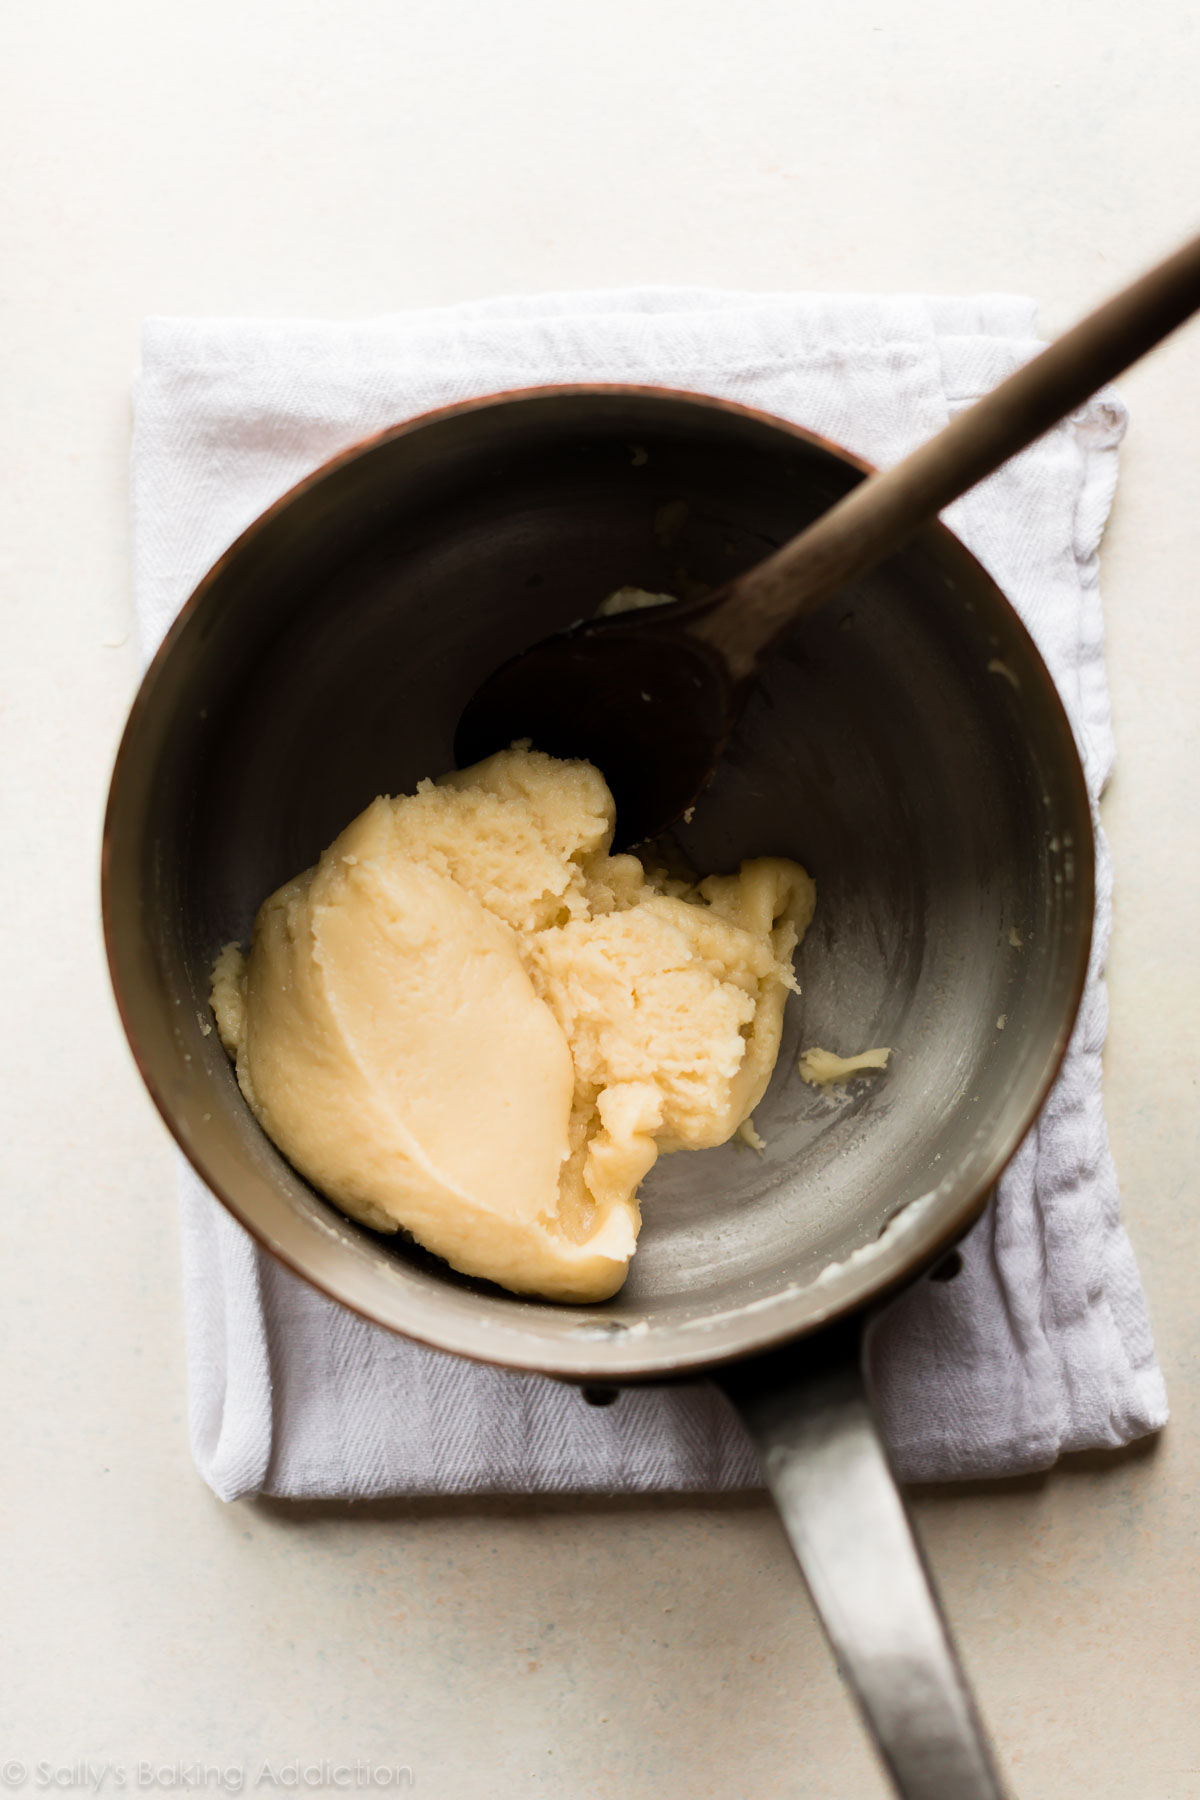 Comment faire une pâte à choux légère et aérée pour les choux à la crème, les éclairs et les profiteroles. Pâté maison une recette de choux sur sallysbakingaddiction.com